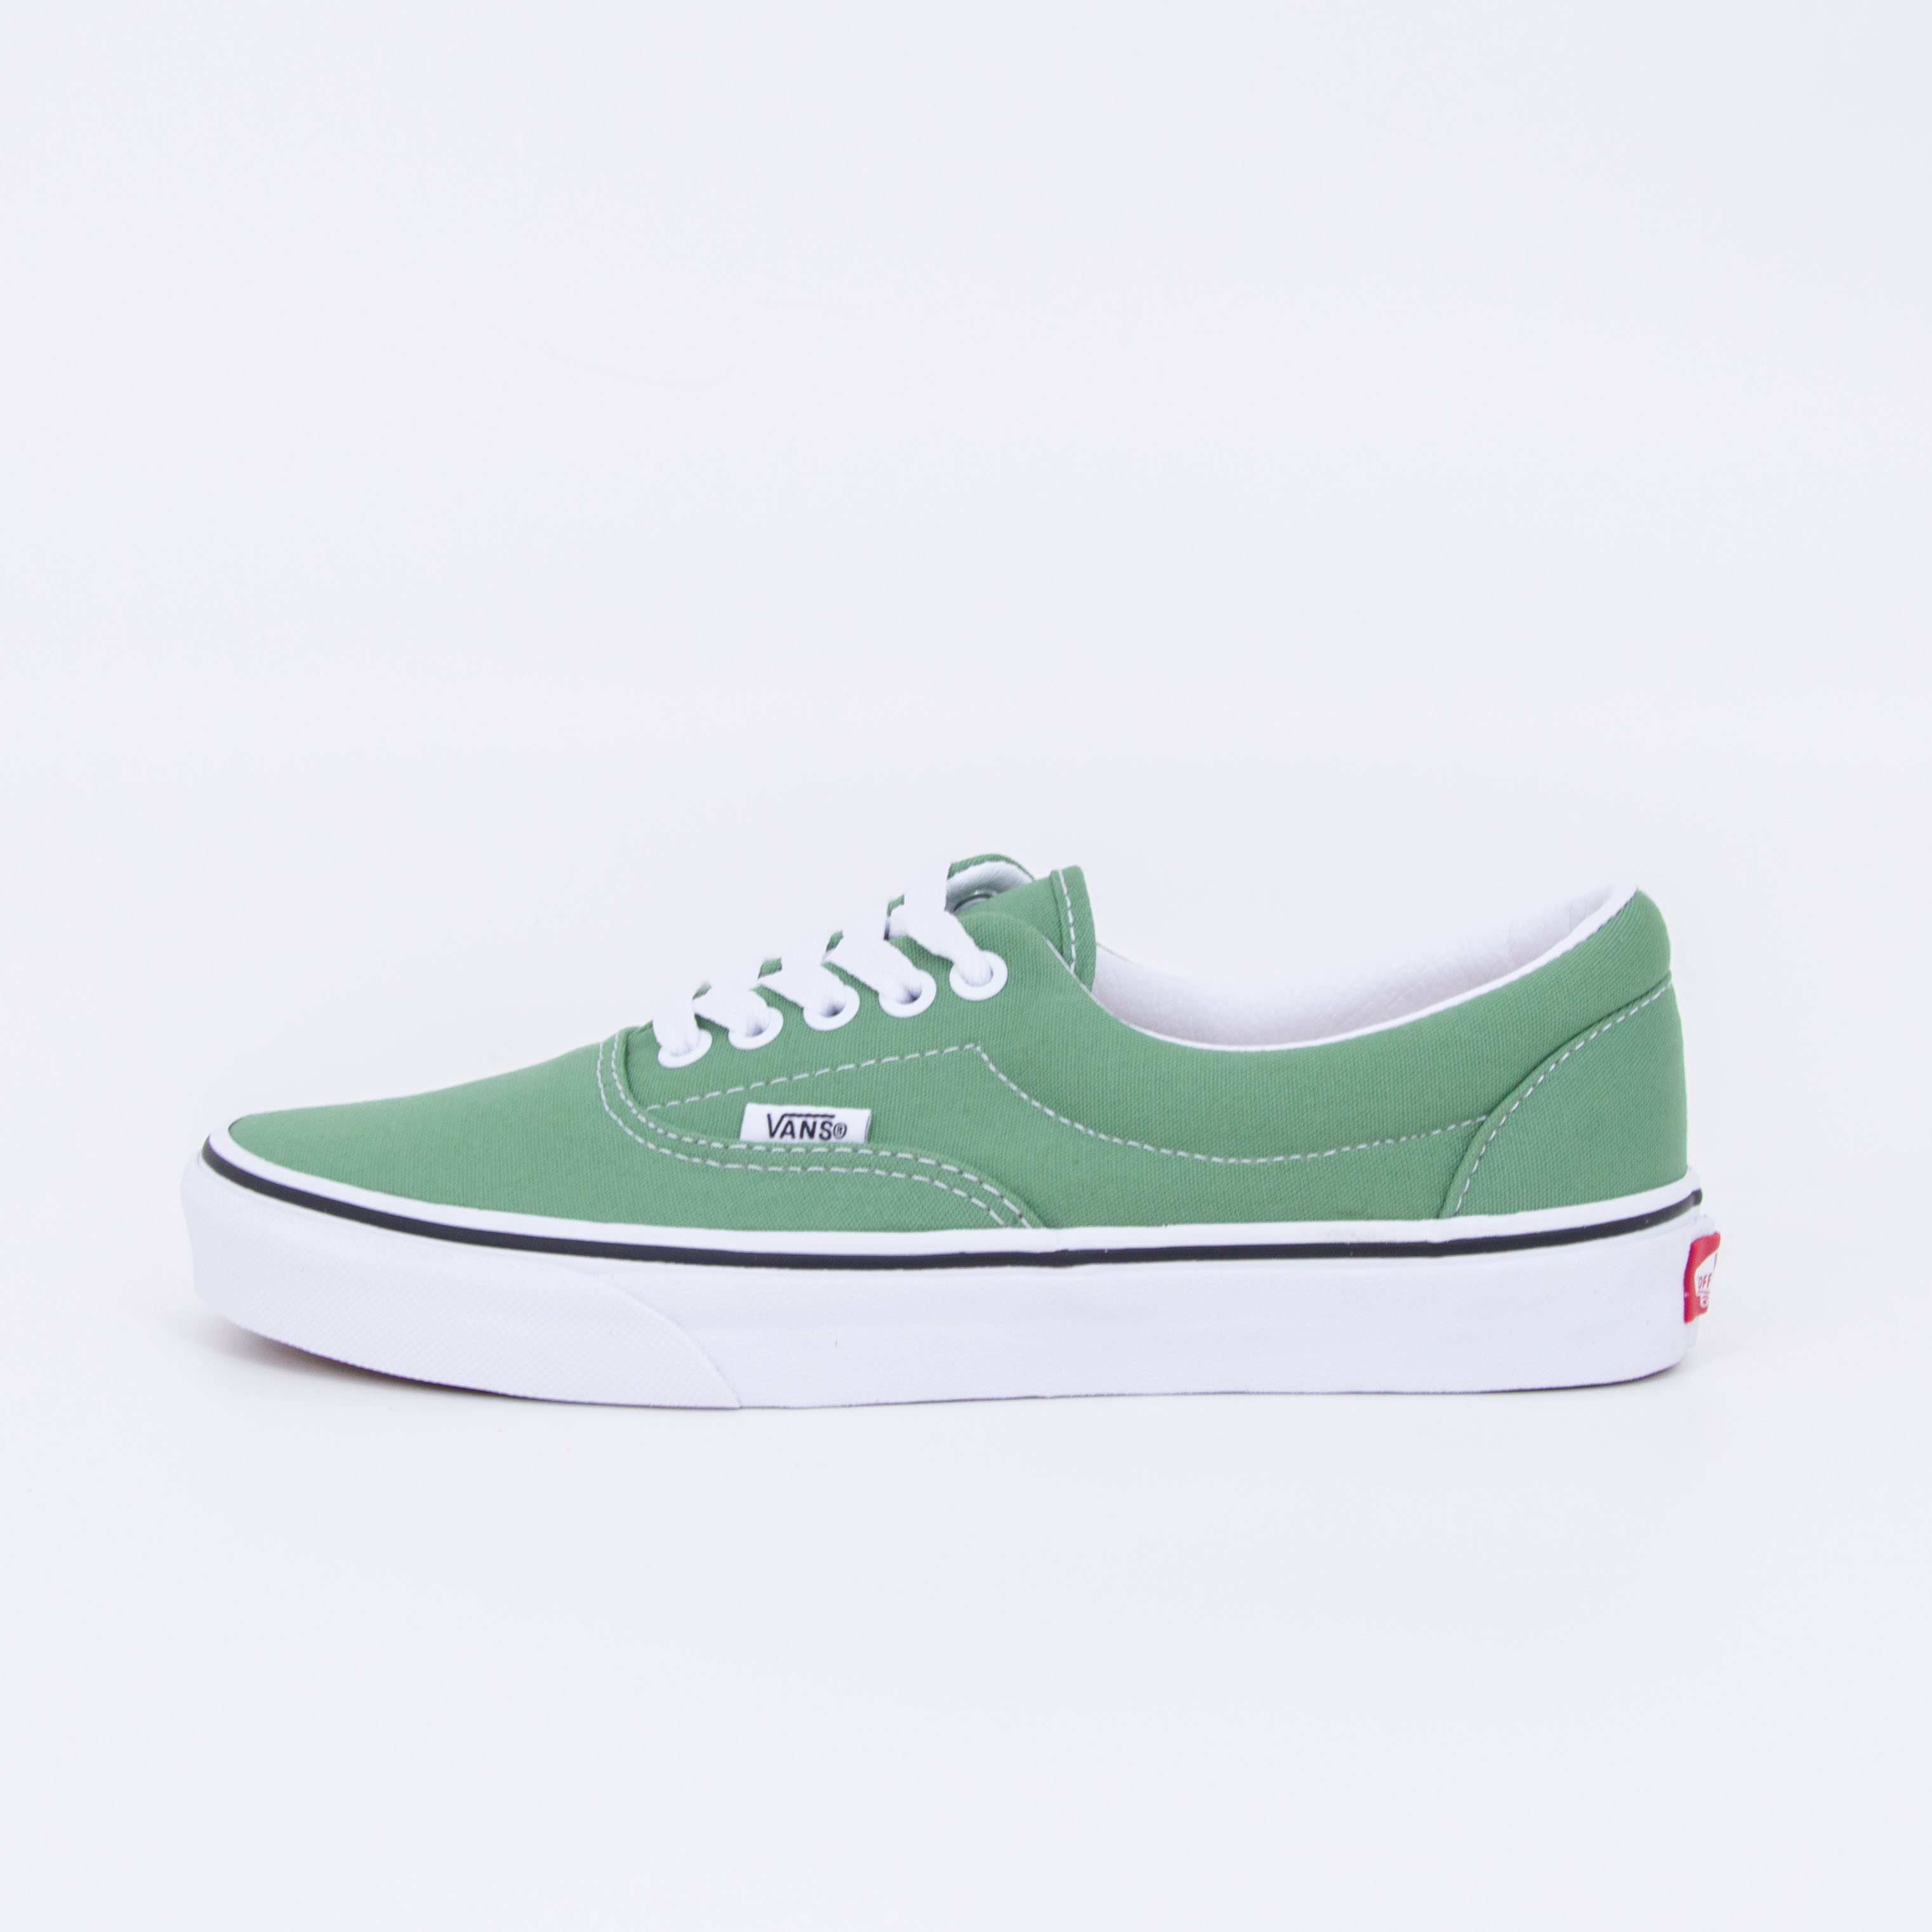 Vans - ERA - Shale Green/True White